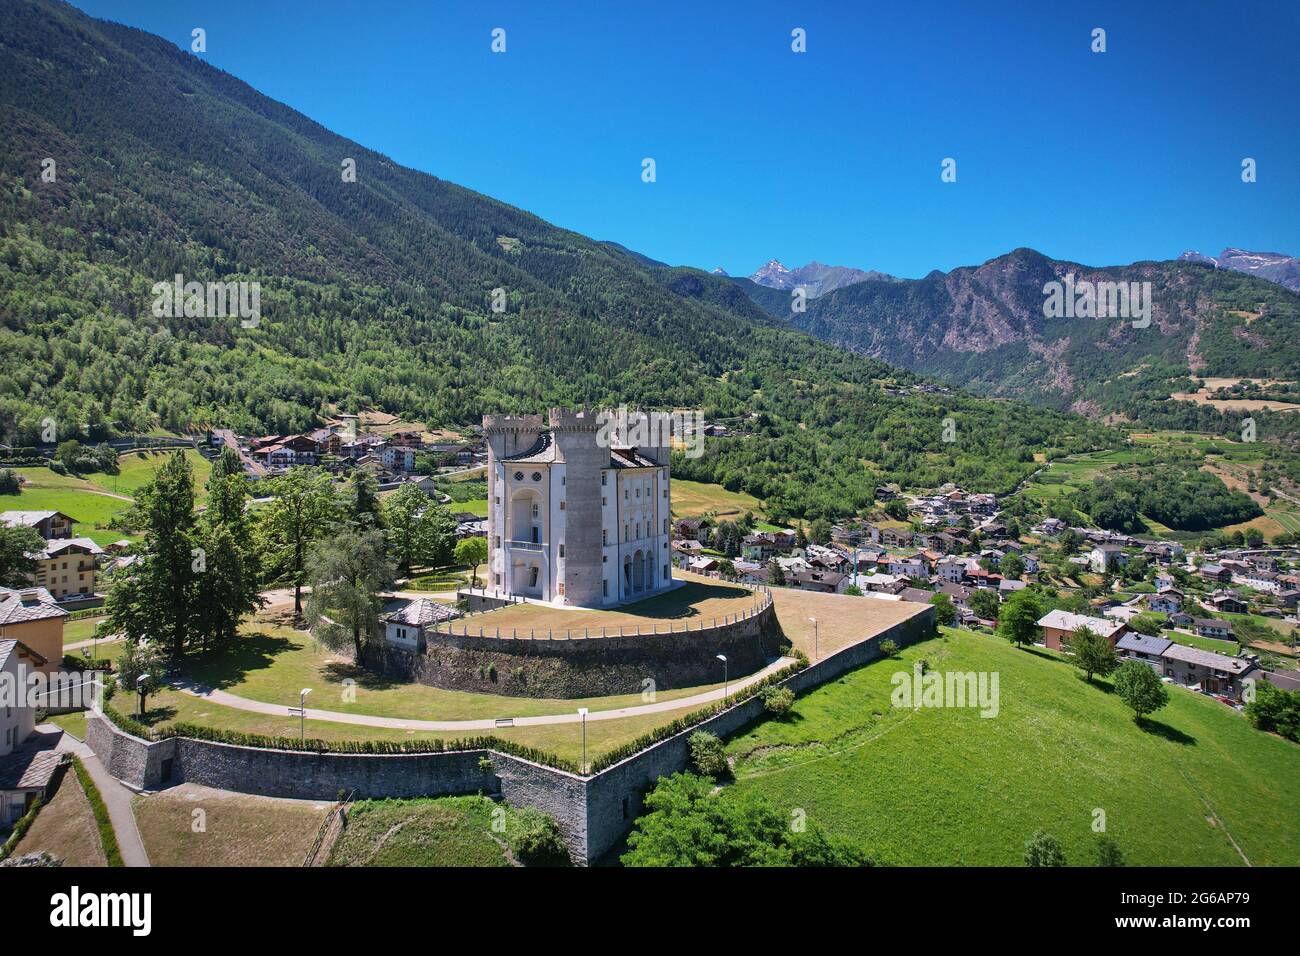 Vue aérienne du château médiéval, Vallée d'Aoste d'Aymavales Italie Banque D'Images